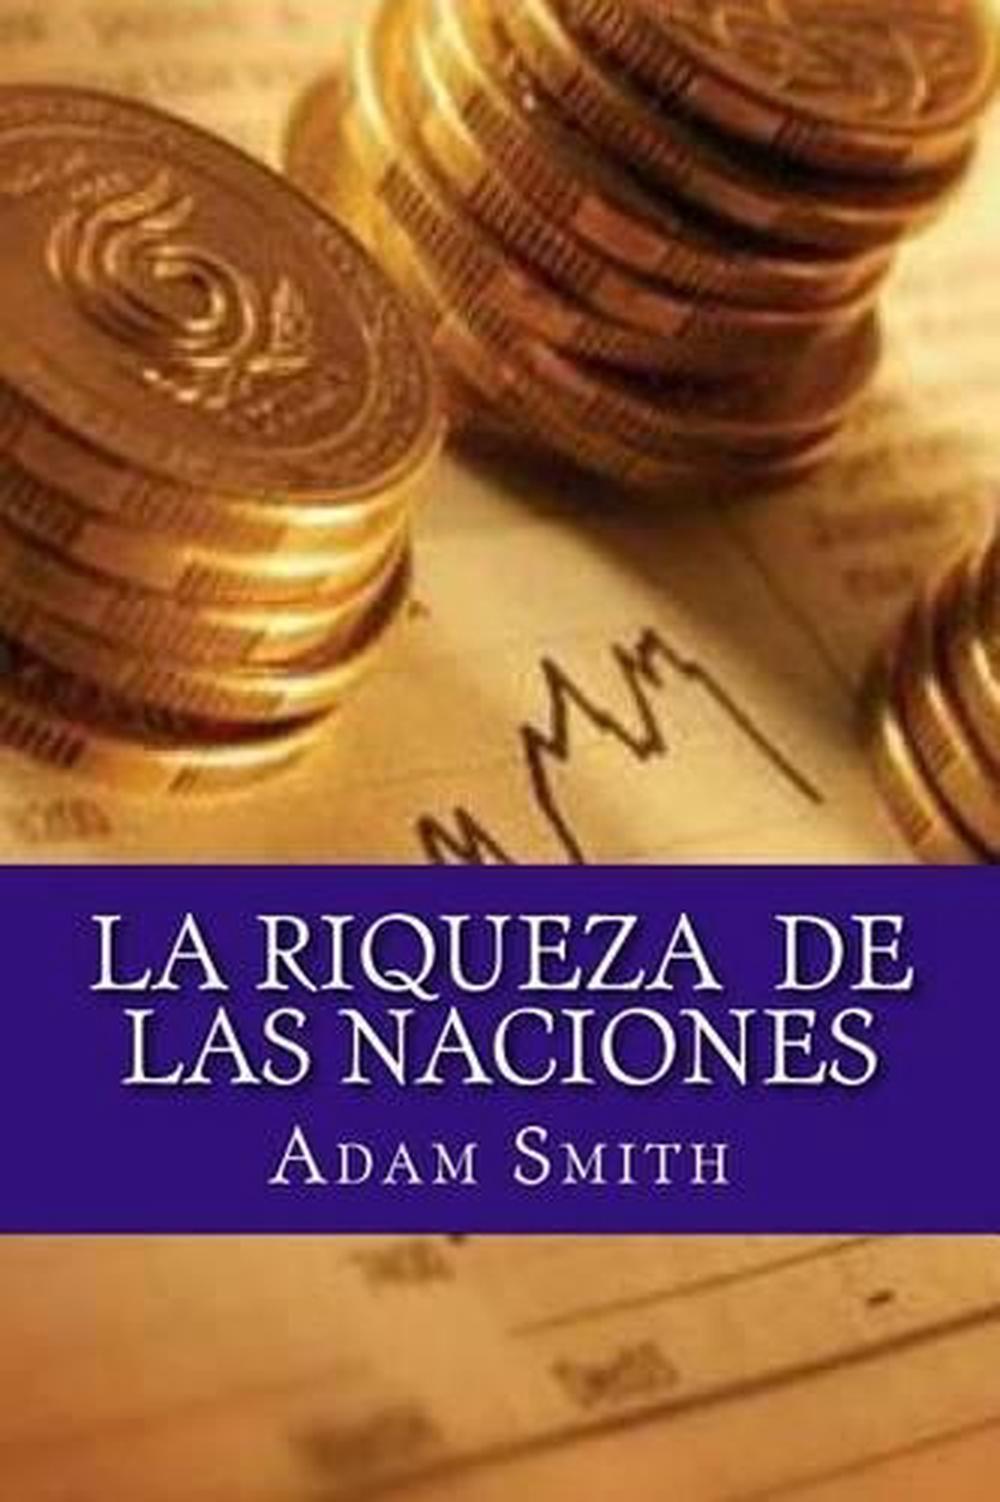 la-riqueza-de-las-naciones-by-adam-smith-spanish-paperback-book-free